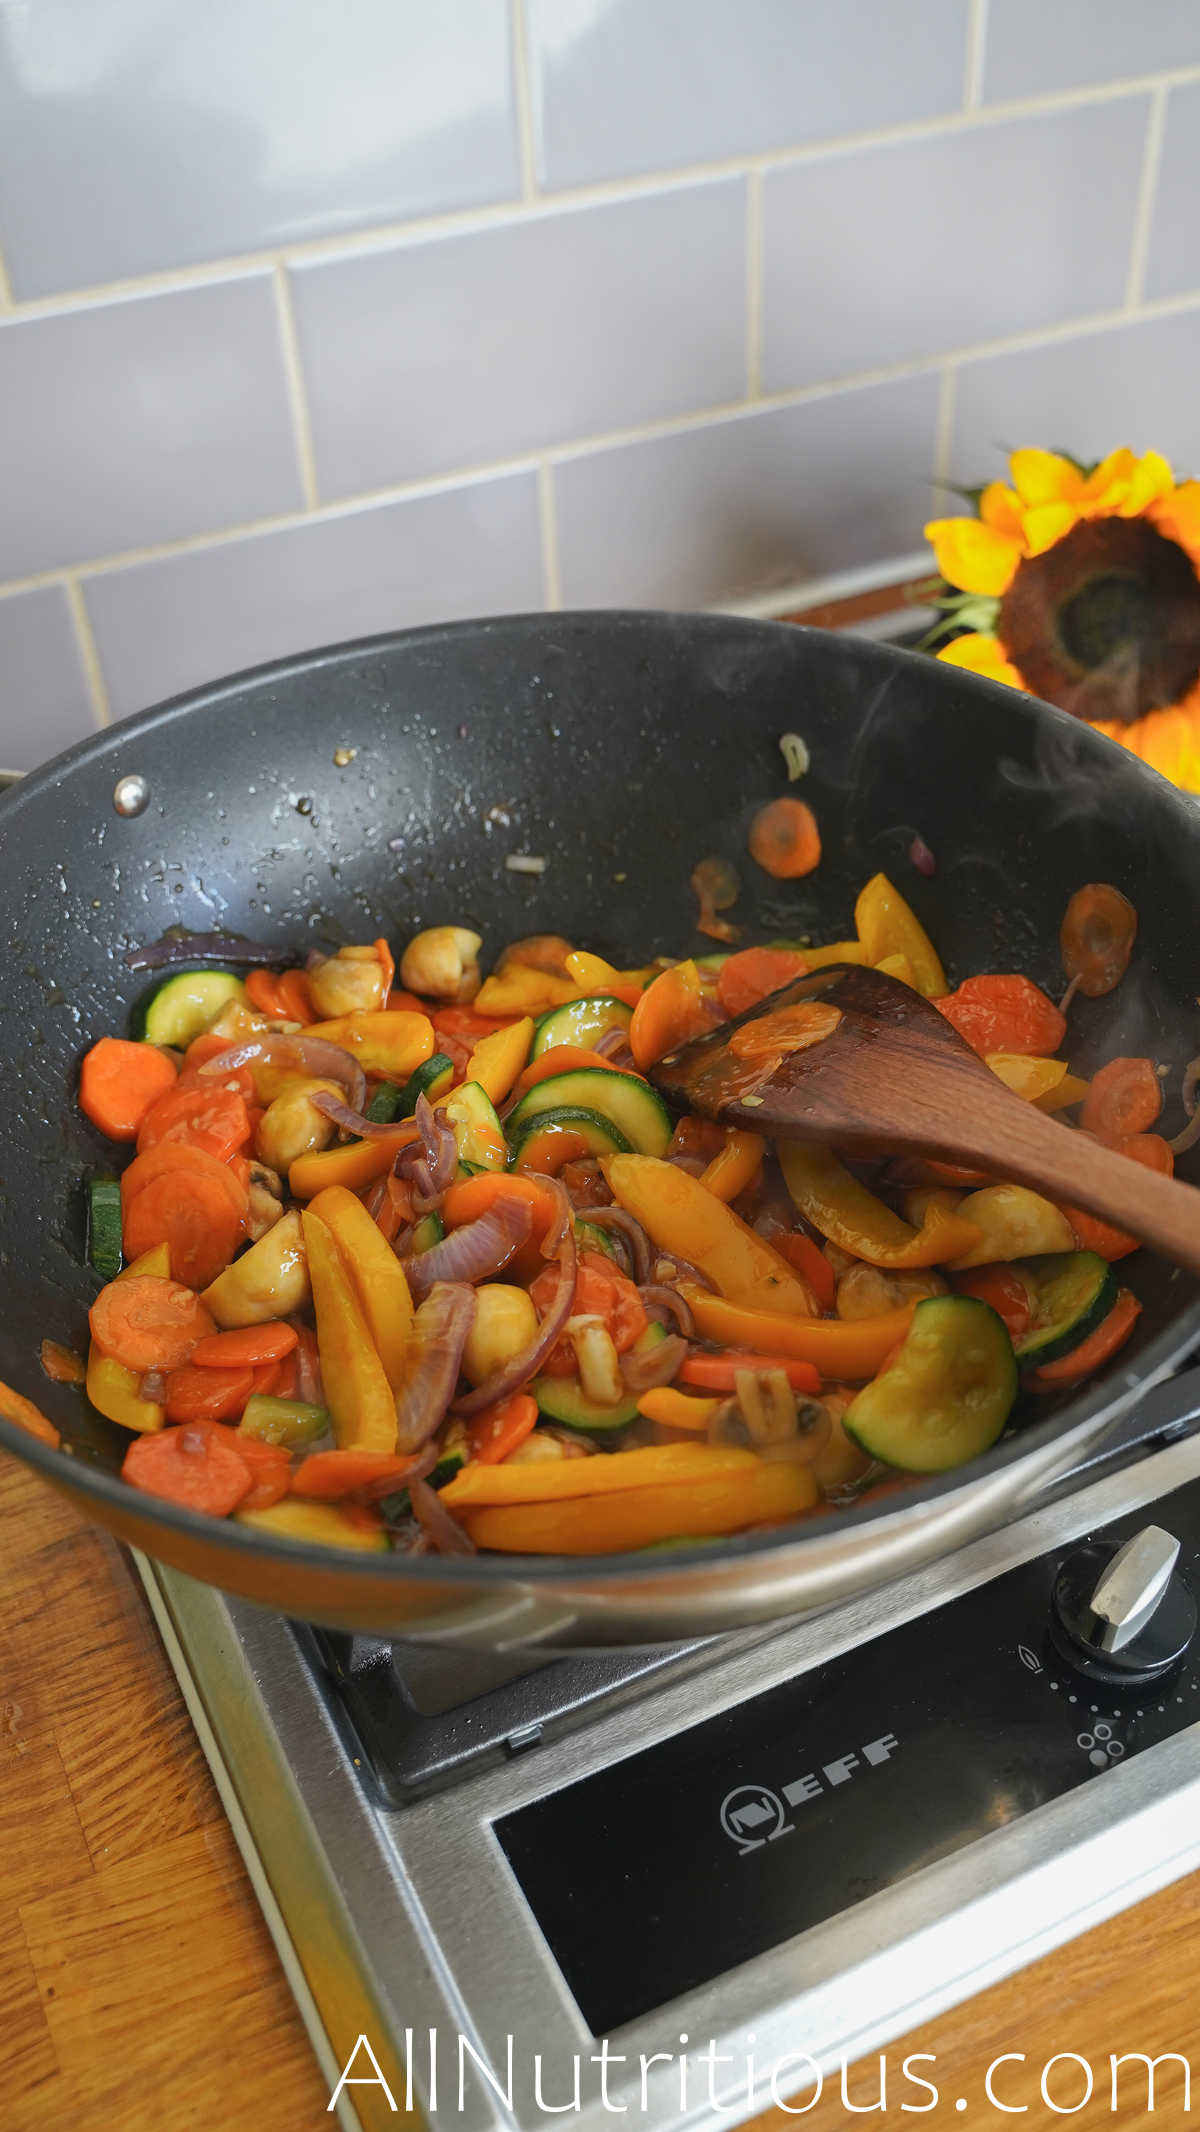 adding sauce to veggies in pan